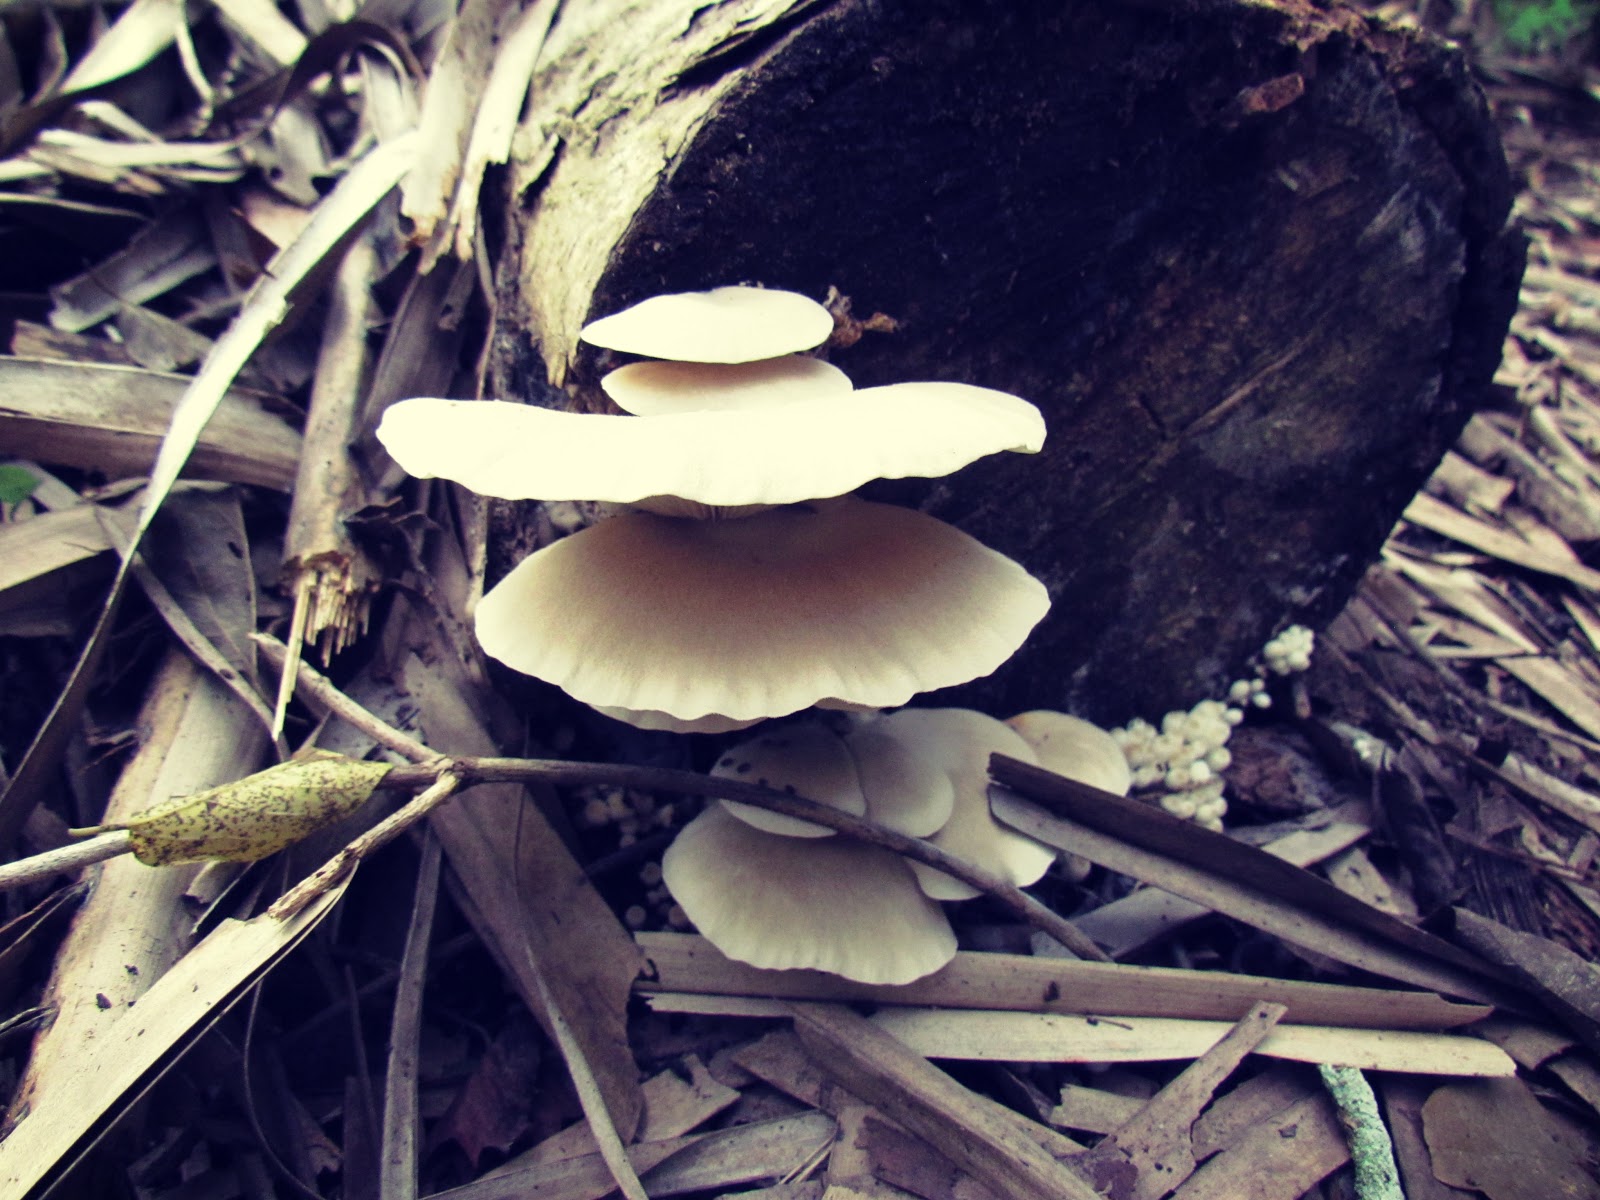 Edible Mushrooms and Mushroom Hunting in Florida